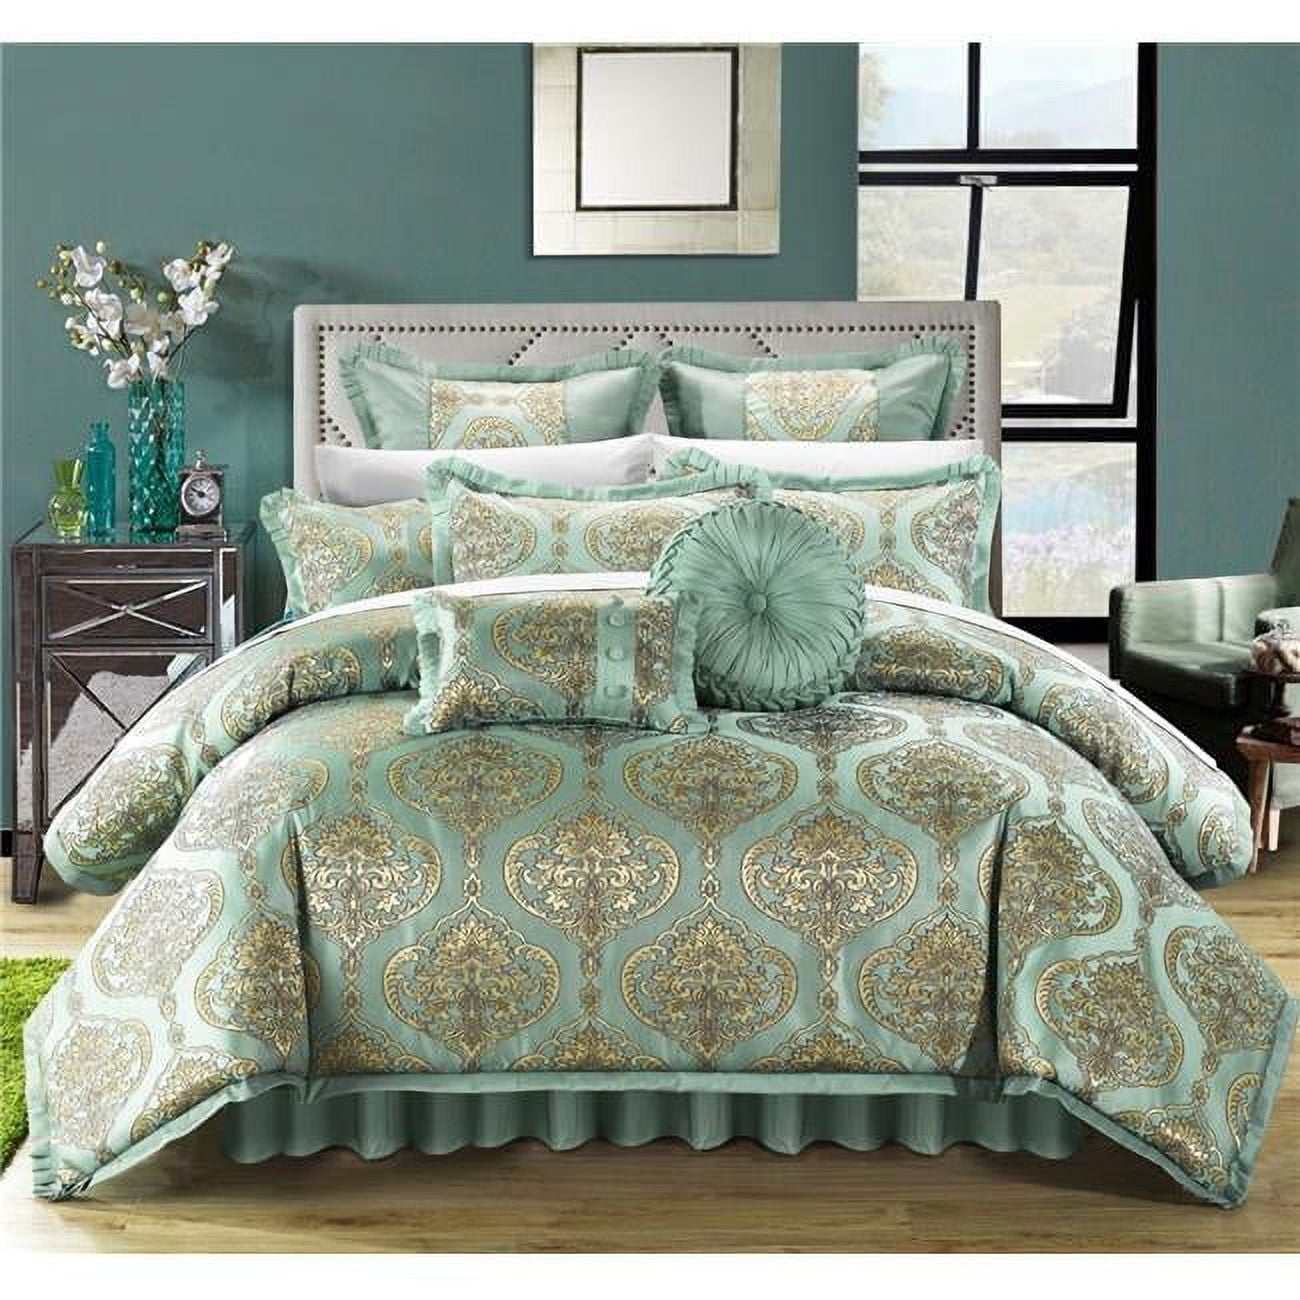 Cs4640-bib-us Perfect Bonito Jacquard Motif Fabric Complete Master Bedroom Queen Bed Comforter Set Blue - 13 Piece